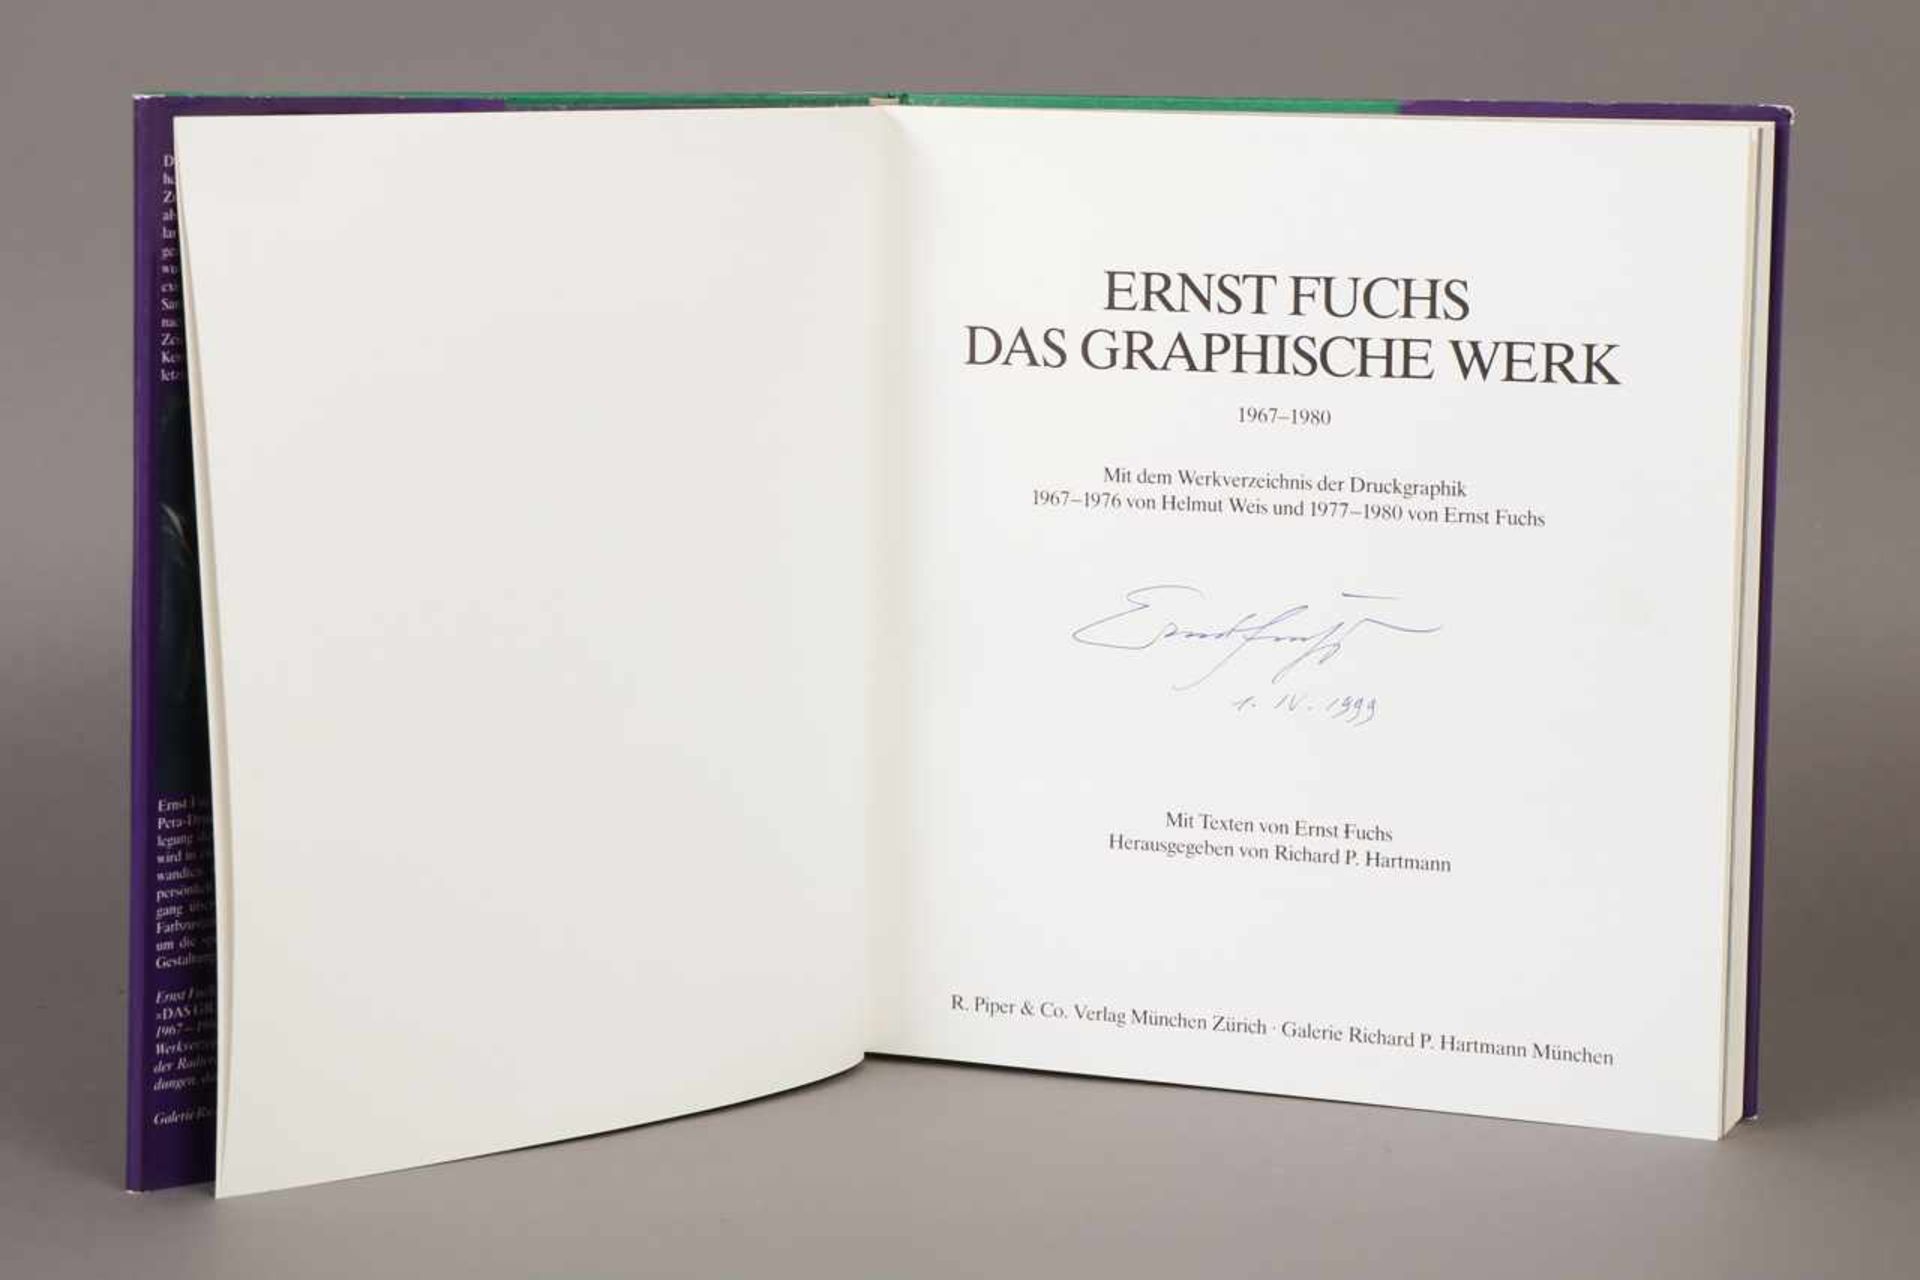 Buch ¨Ernst Fuchs, Klassiker der Neuzeit¨ Herausgeber Richard P. Hartmann, Band IV., handsigniert - Bild 2 aus 2